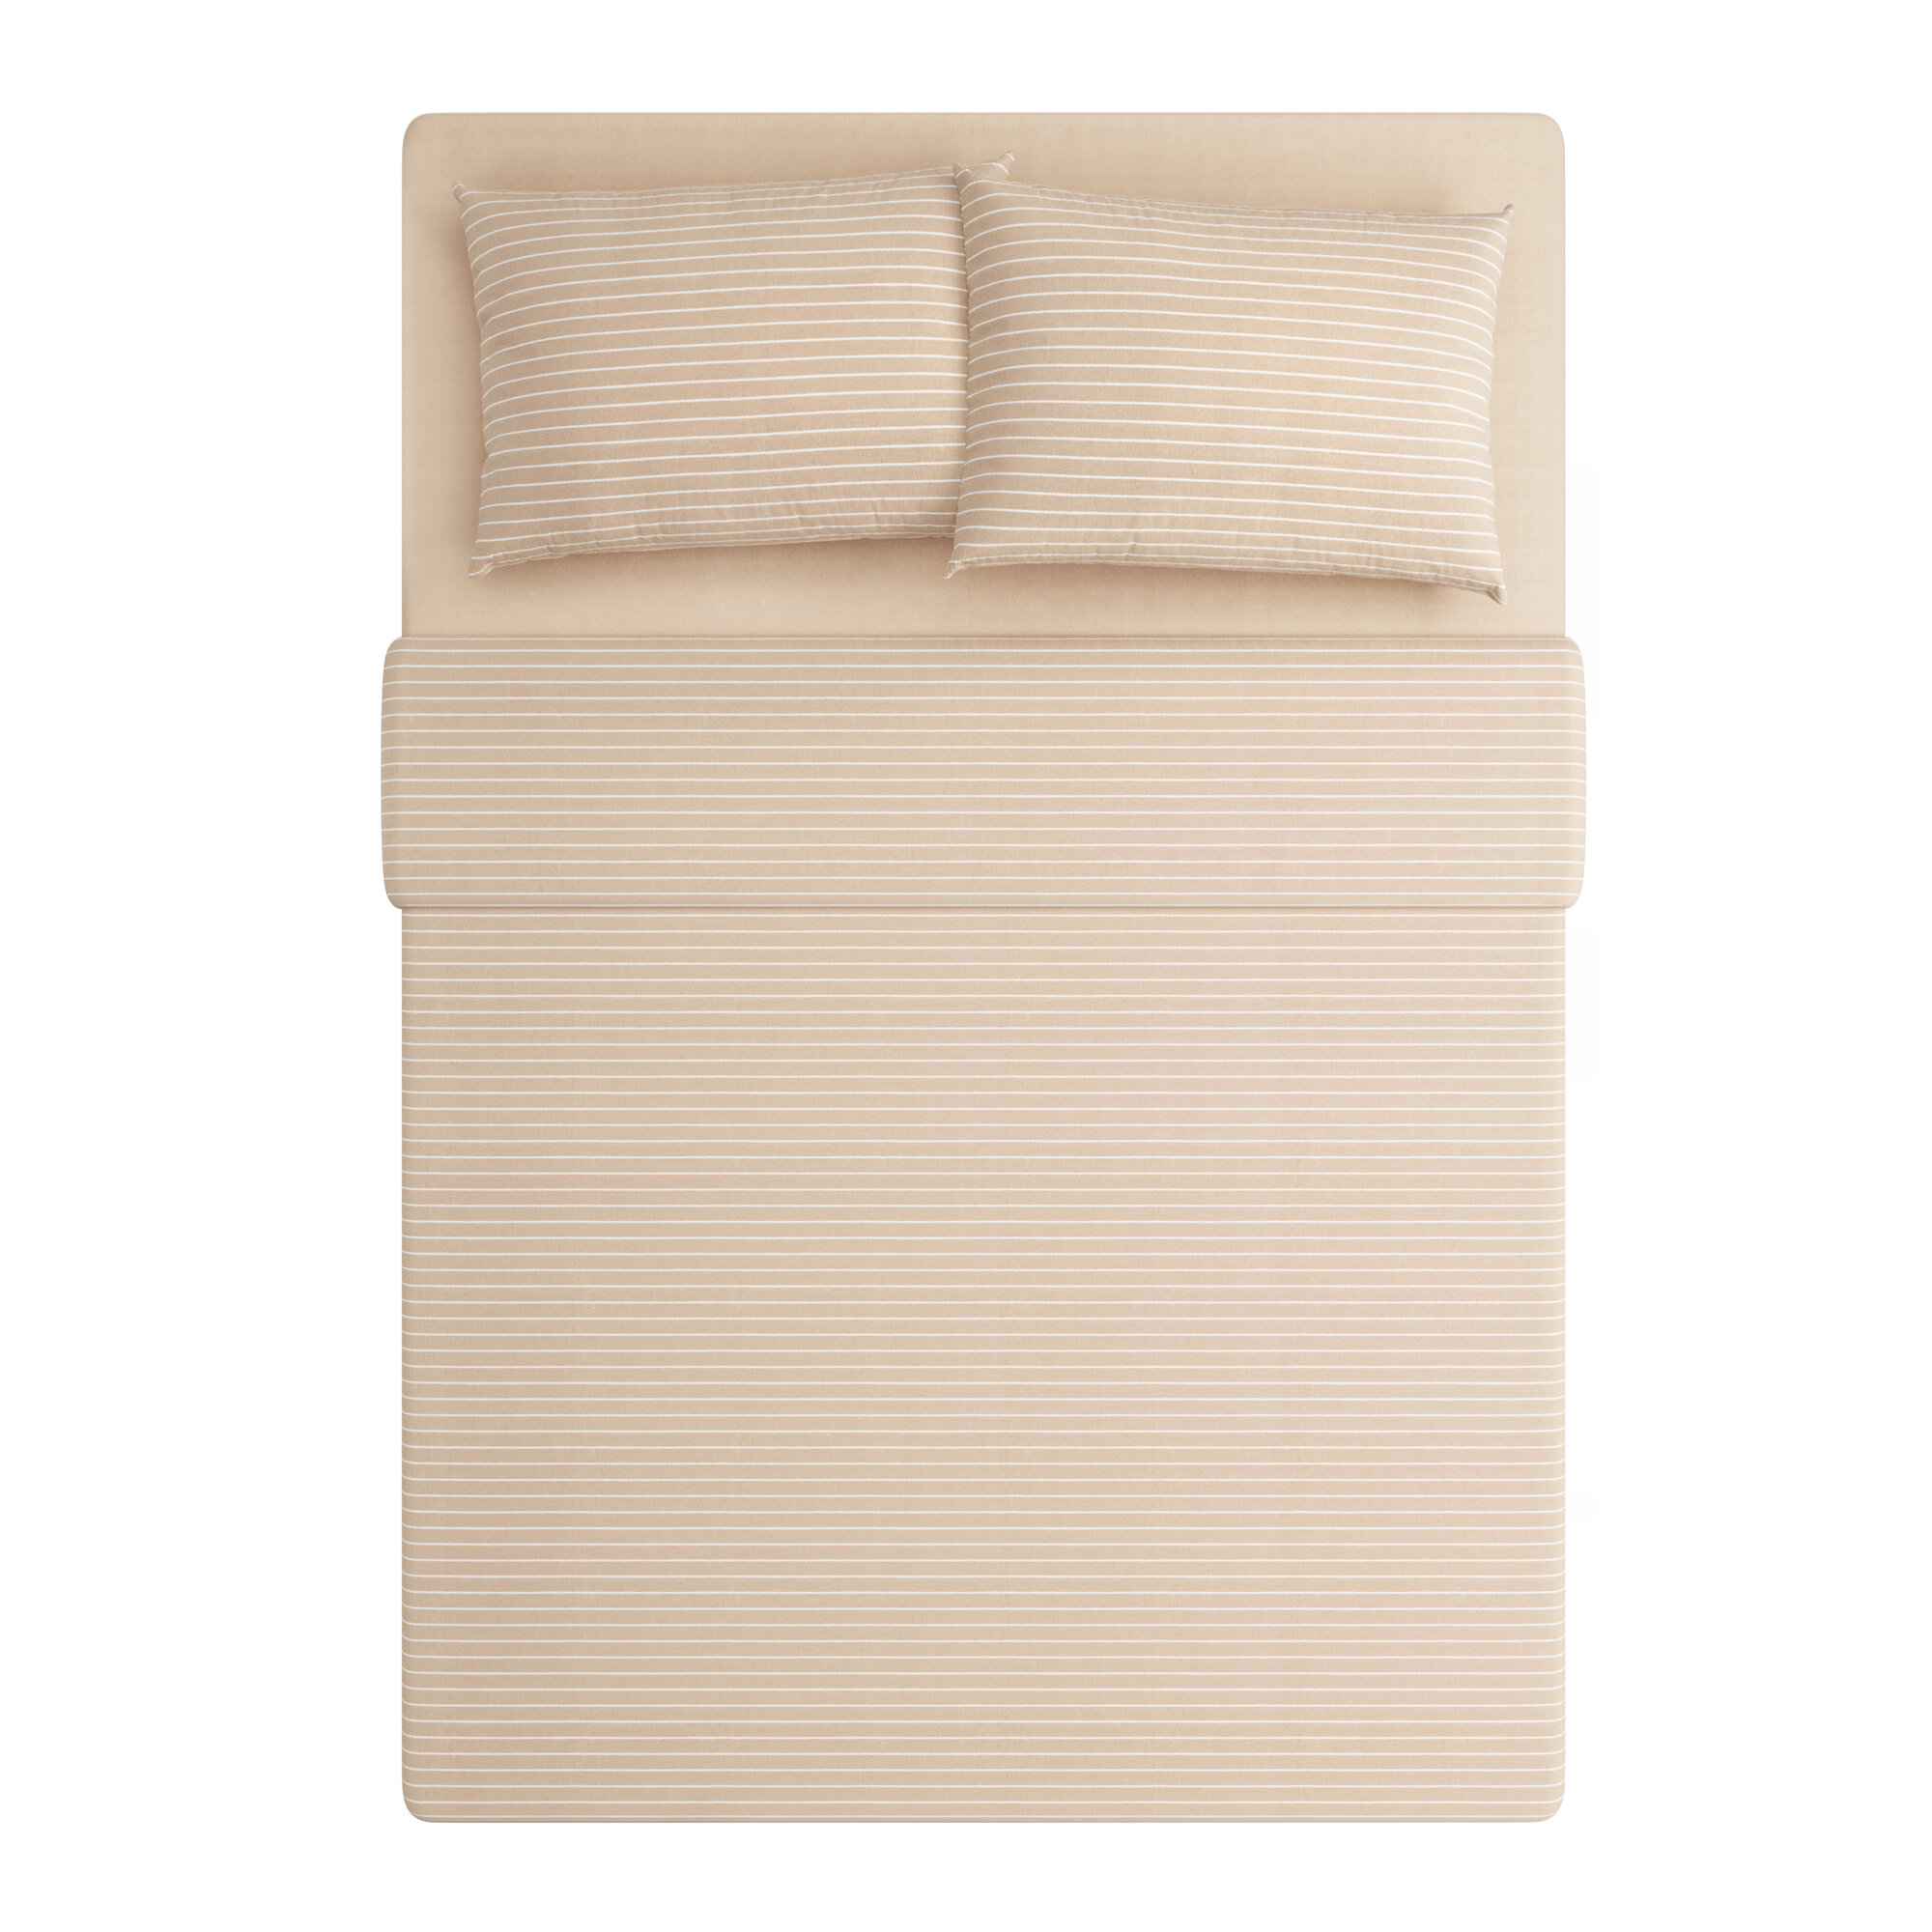 Комплект постельного белья Pragma Renla 1.5 спальный с простынёй, песочно-бежевый